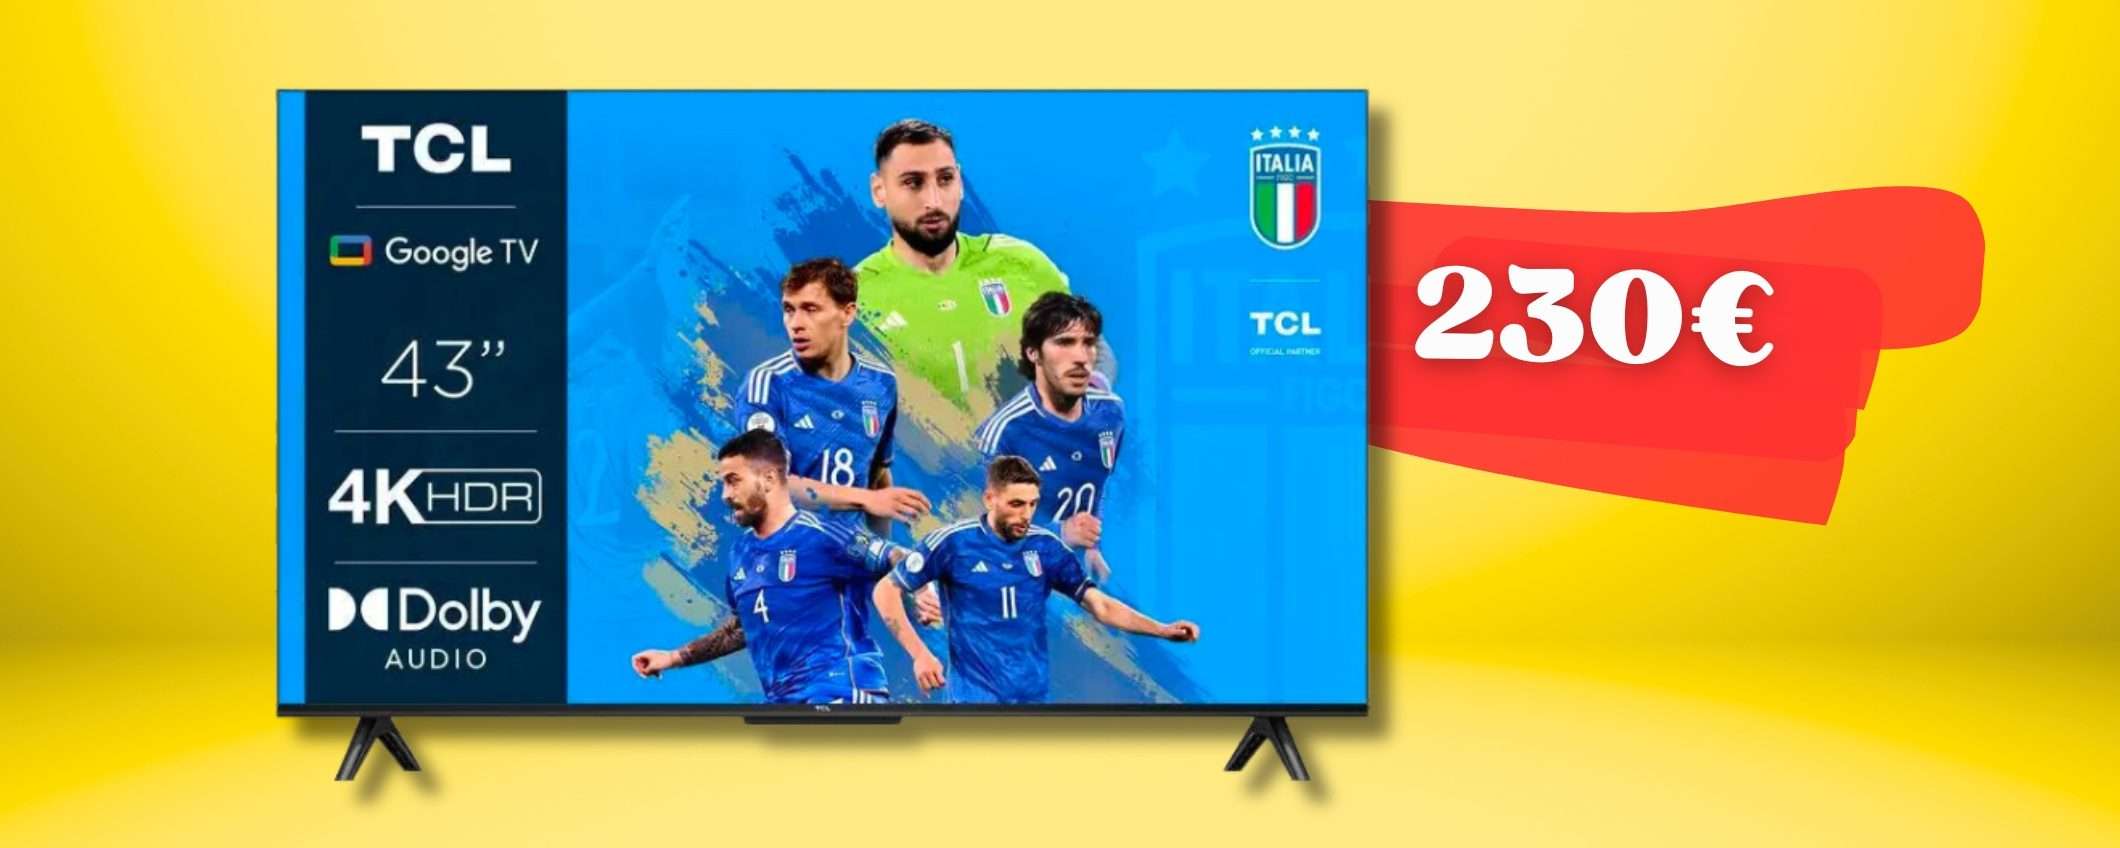 TCL per un televisore 43 pollici con Google TV e visione 4K (230€)